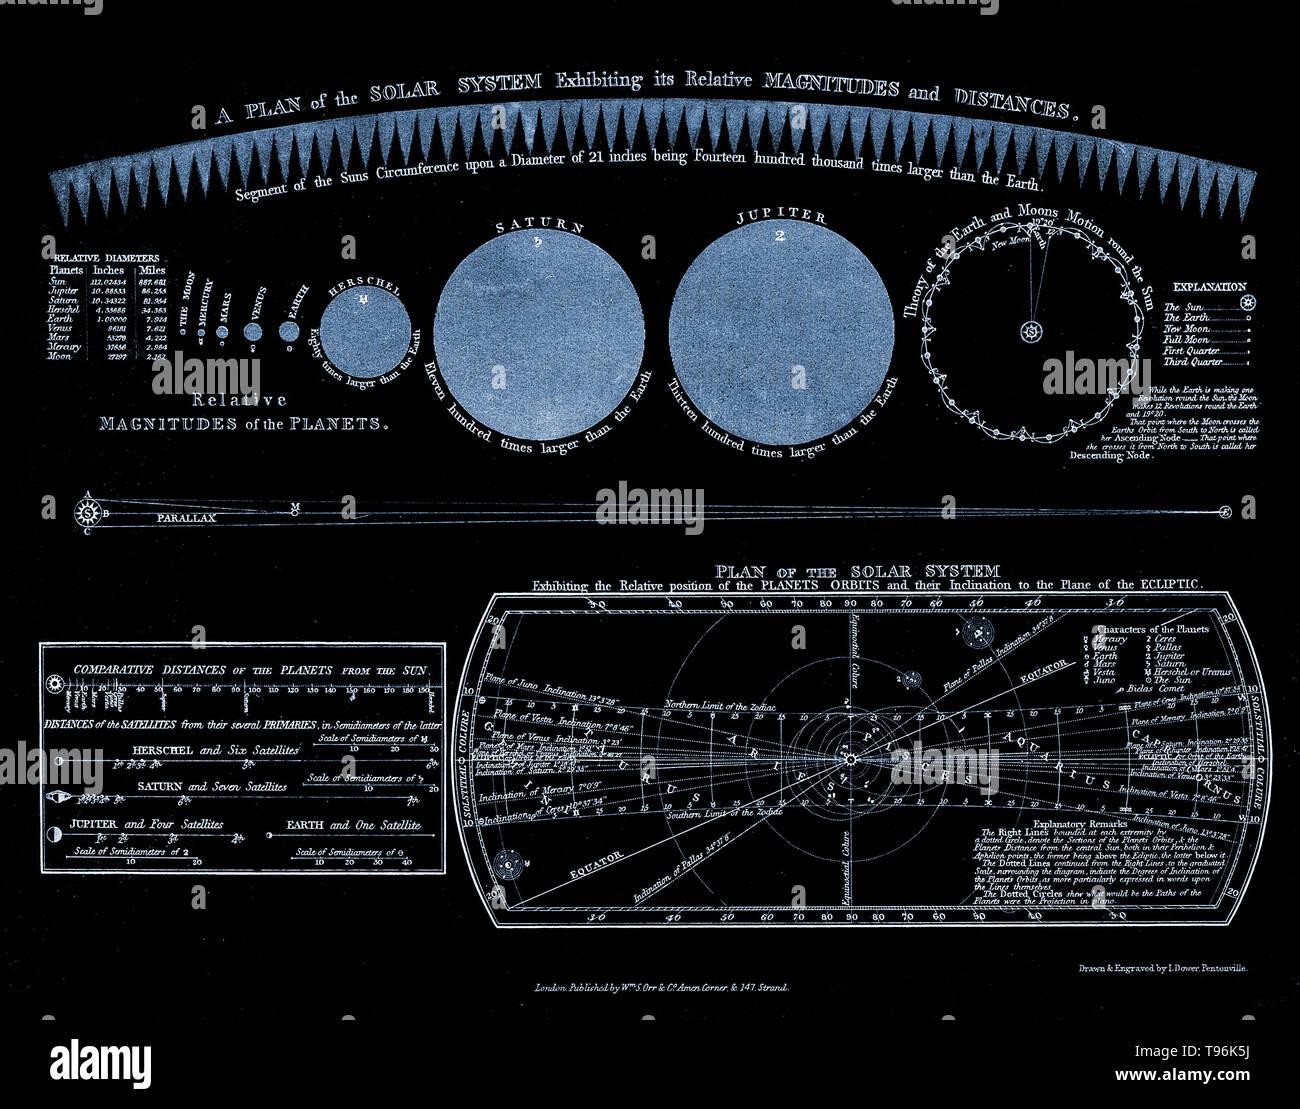 Un piano del sistema solare, mostrante grandezze relative e le distanze. Il pianeta Urano è qui chiamato Herschel. Incisione storica del XVIII secolo. William Herschel scoprì Urano il 13 marzo 1781, espandendo i confini noti del Sistema Solare e rendendo il primo pianeta scoperto con un telescopio. Il consenso sul nome non era stato raggiunto fino a quasi 70 anni dopo il pianeta la scoperta. Foto Stock